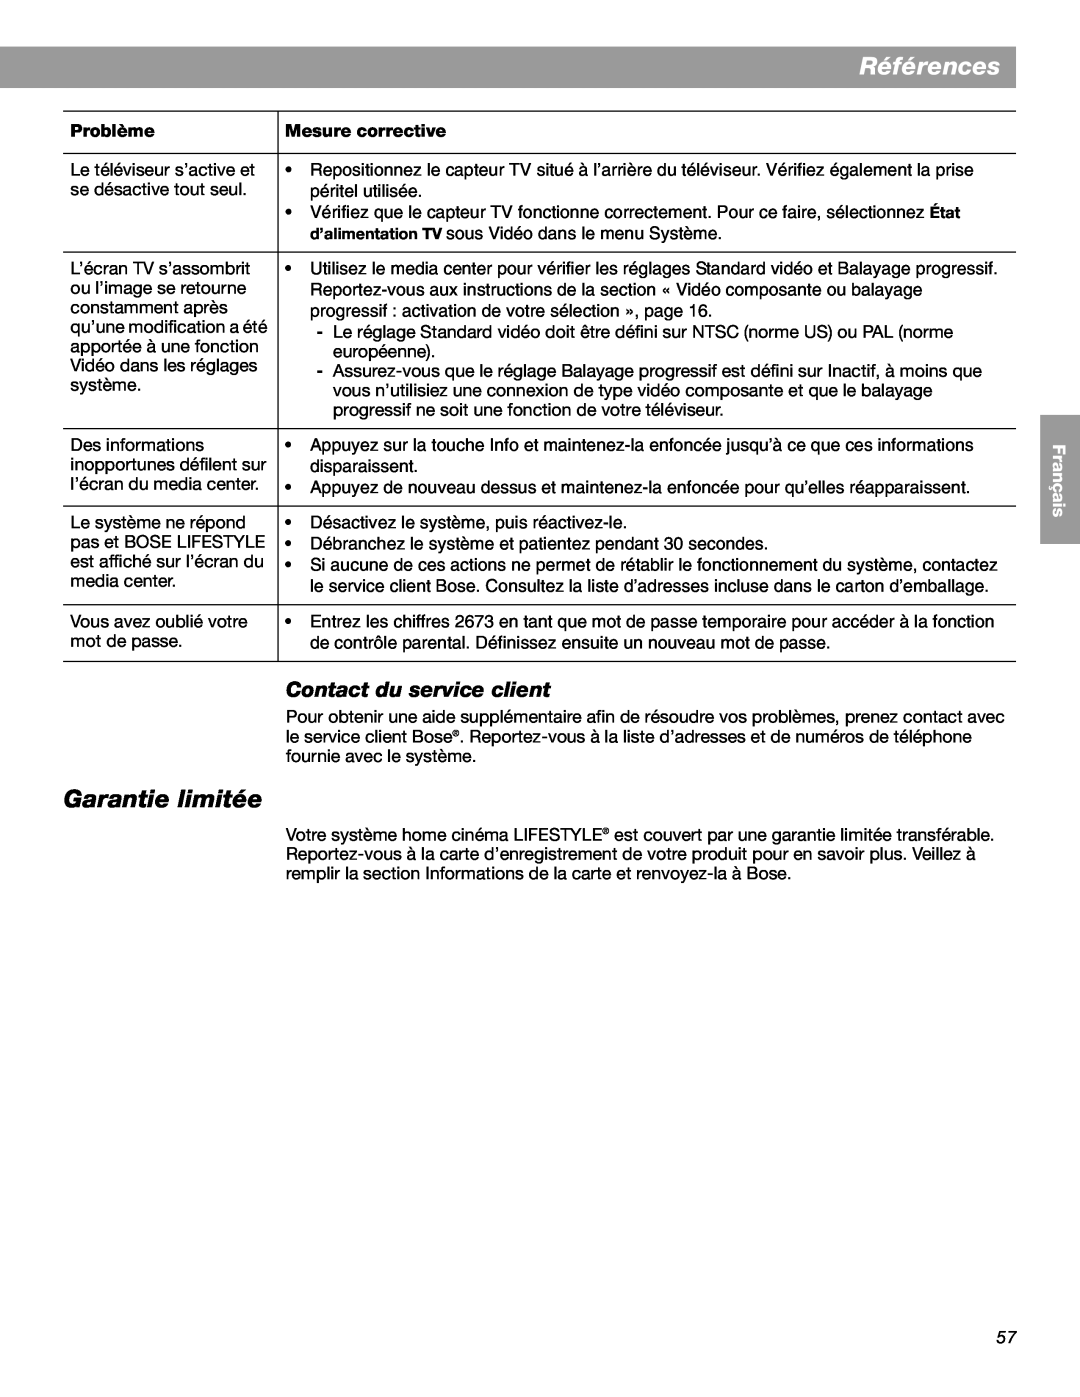 Bose LIFESTYLE 38, LIFESTYLE 48 manual Garantie limitée, Références, Contact du service client, English Español Français 